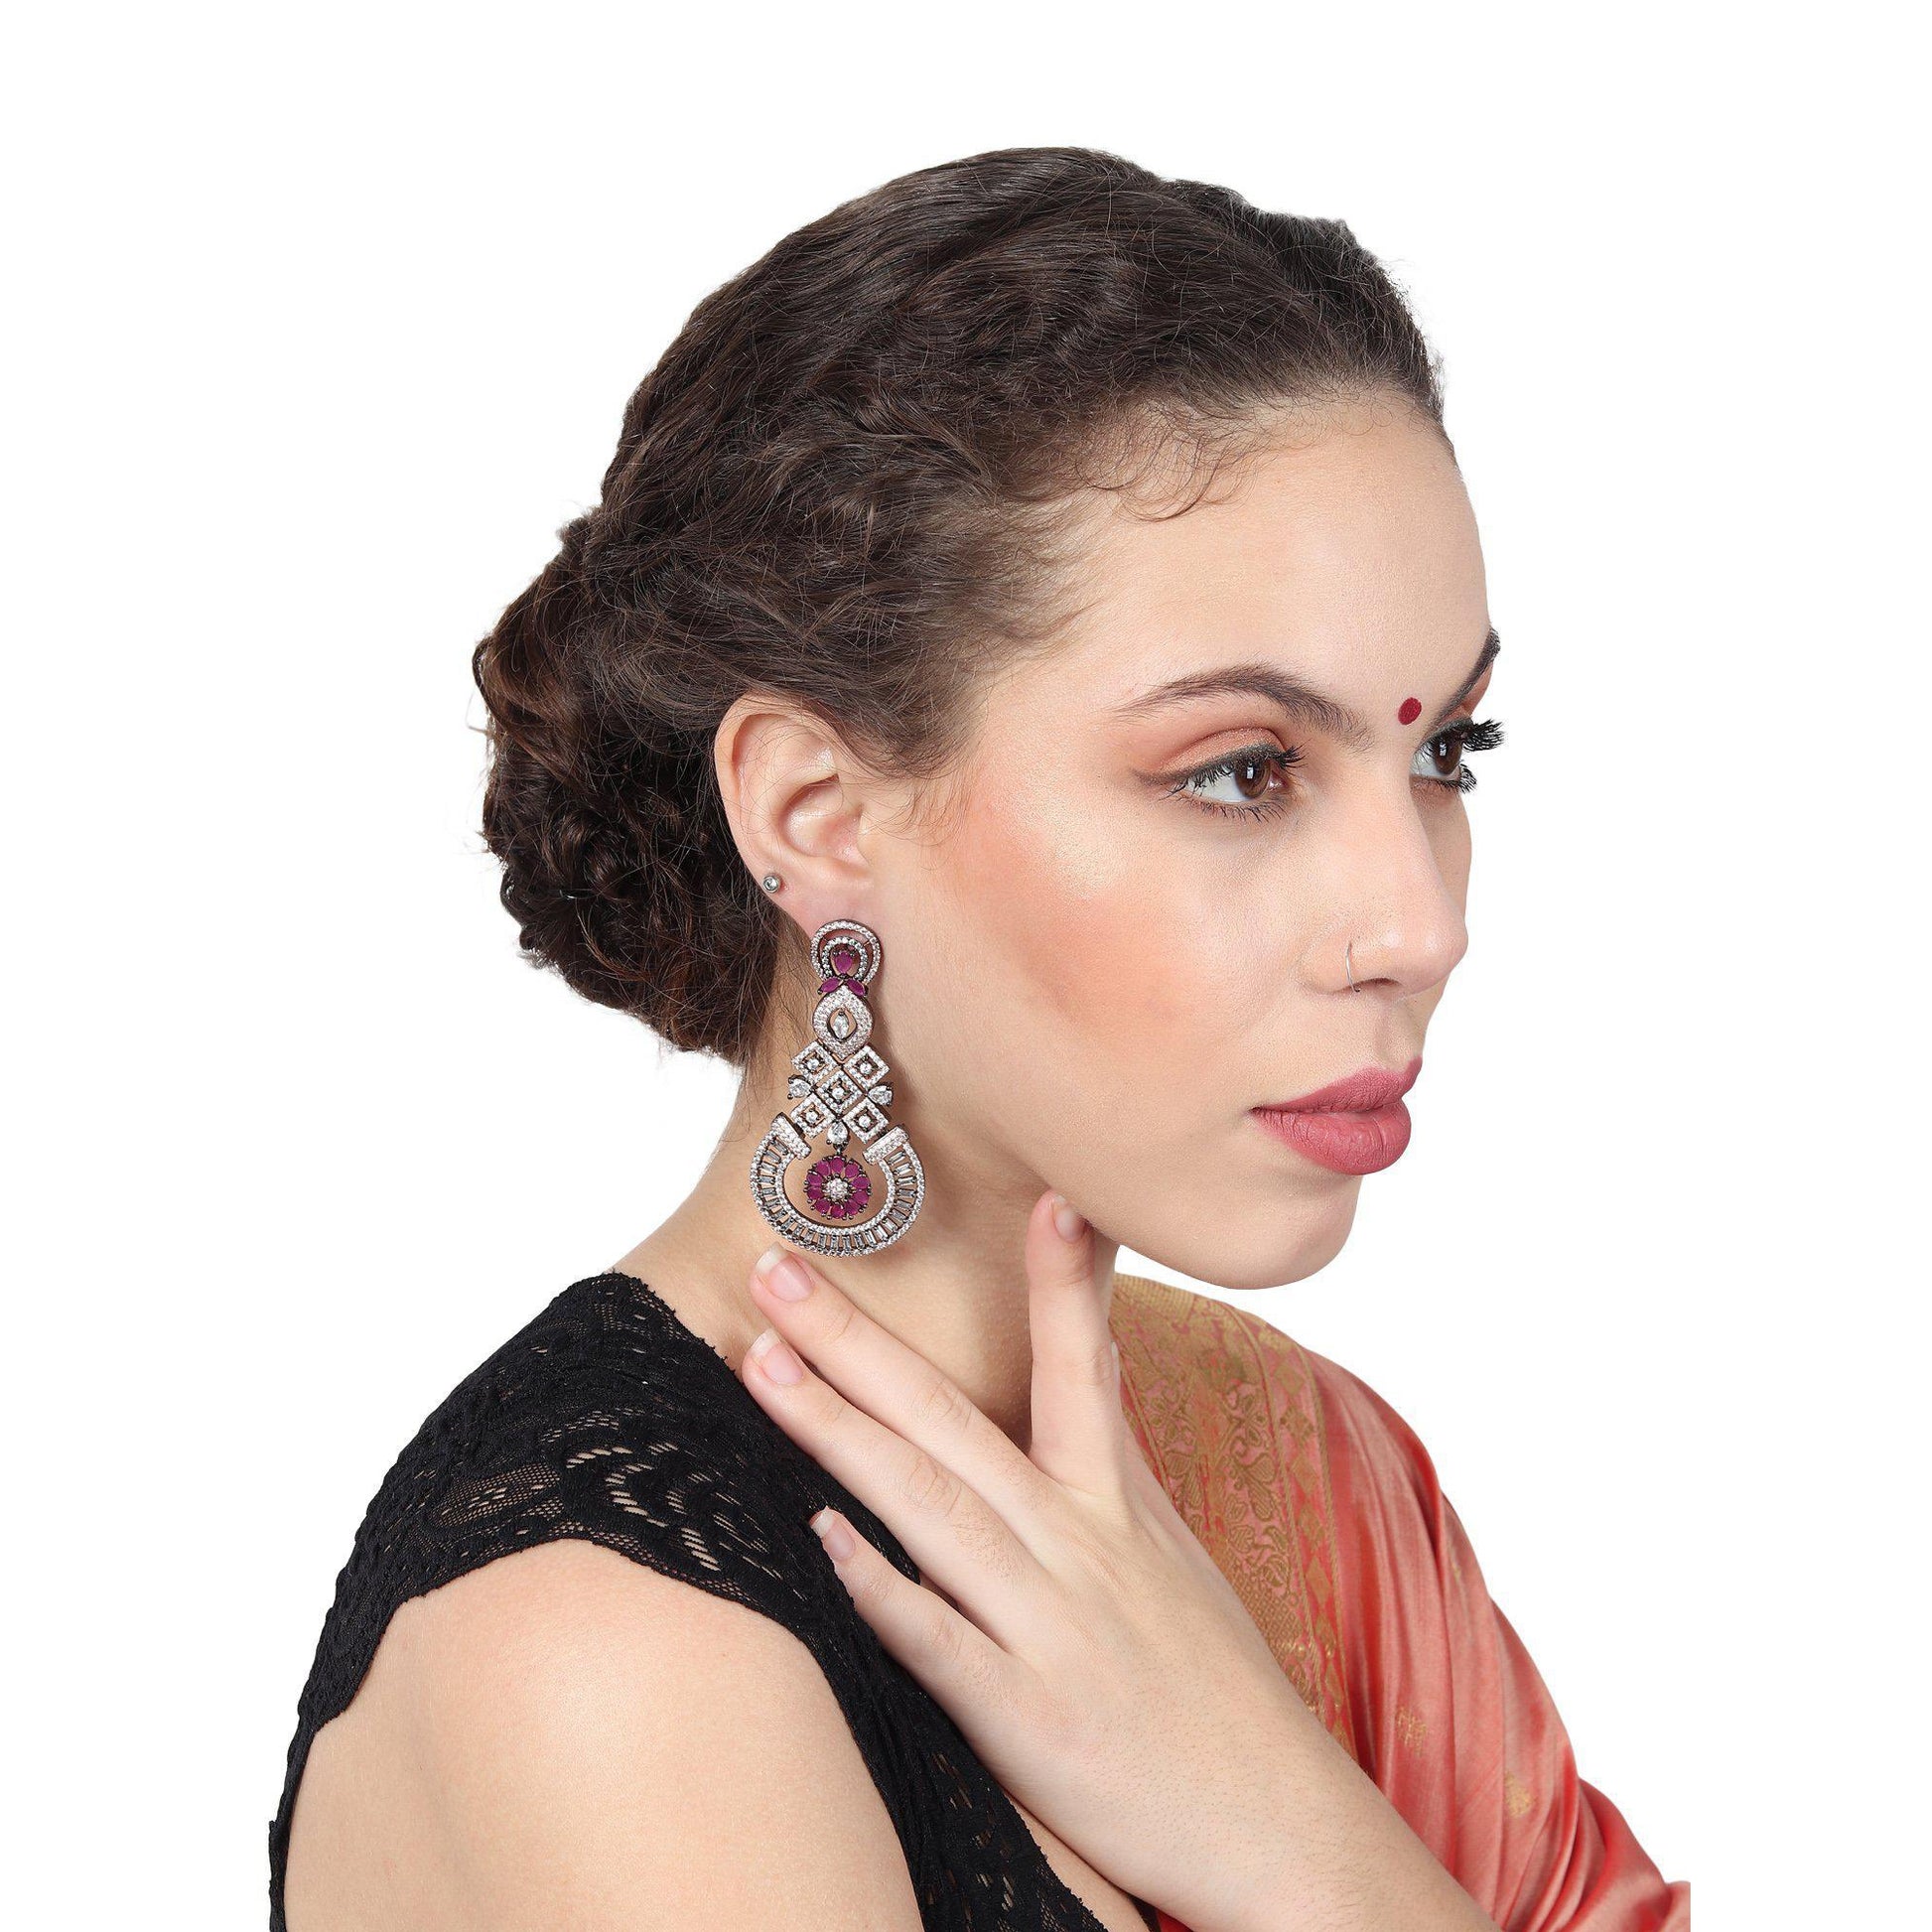 Purple Zircon Diamond Cut Earrings-Earrings-ONESKYSHOP